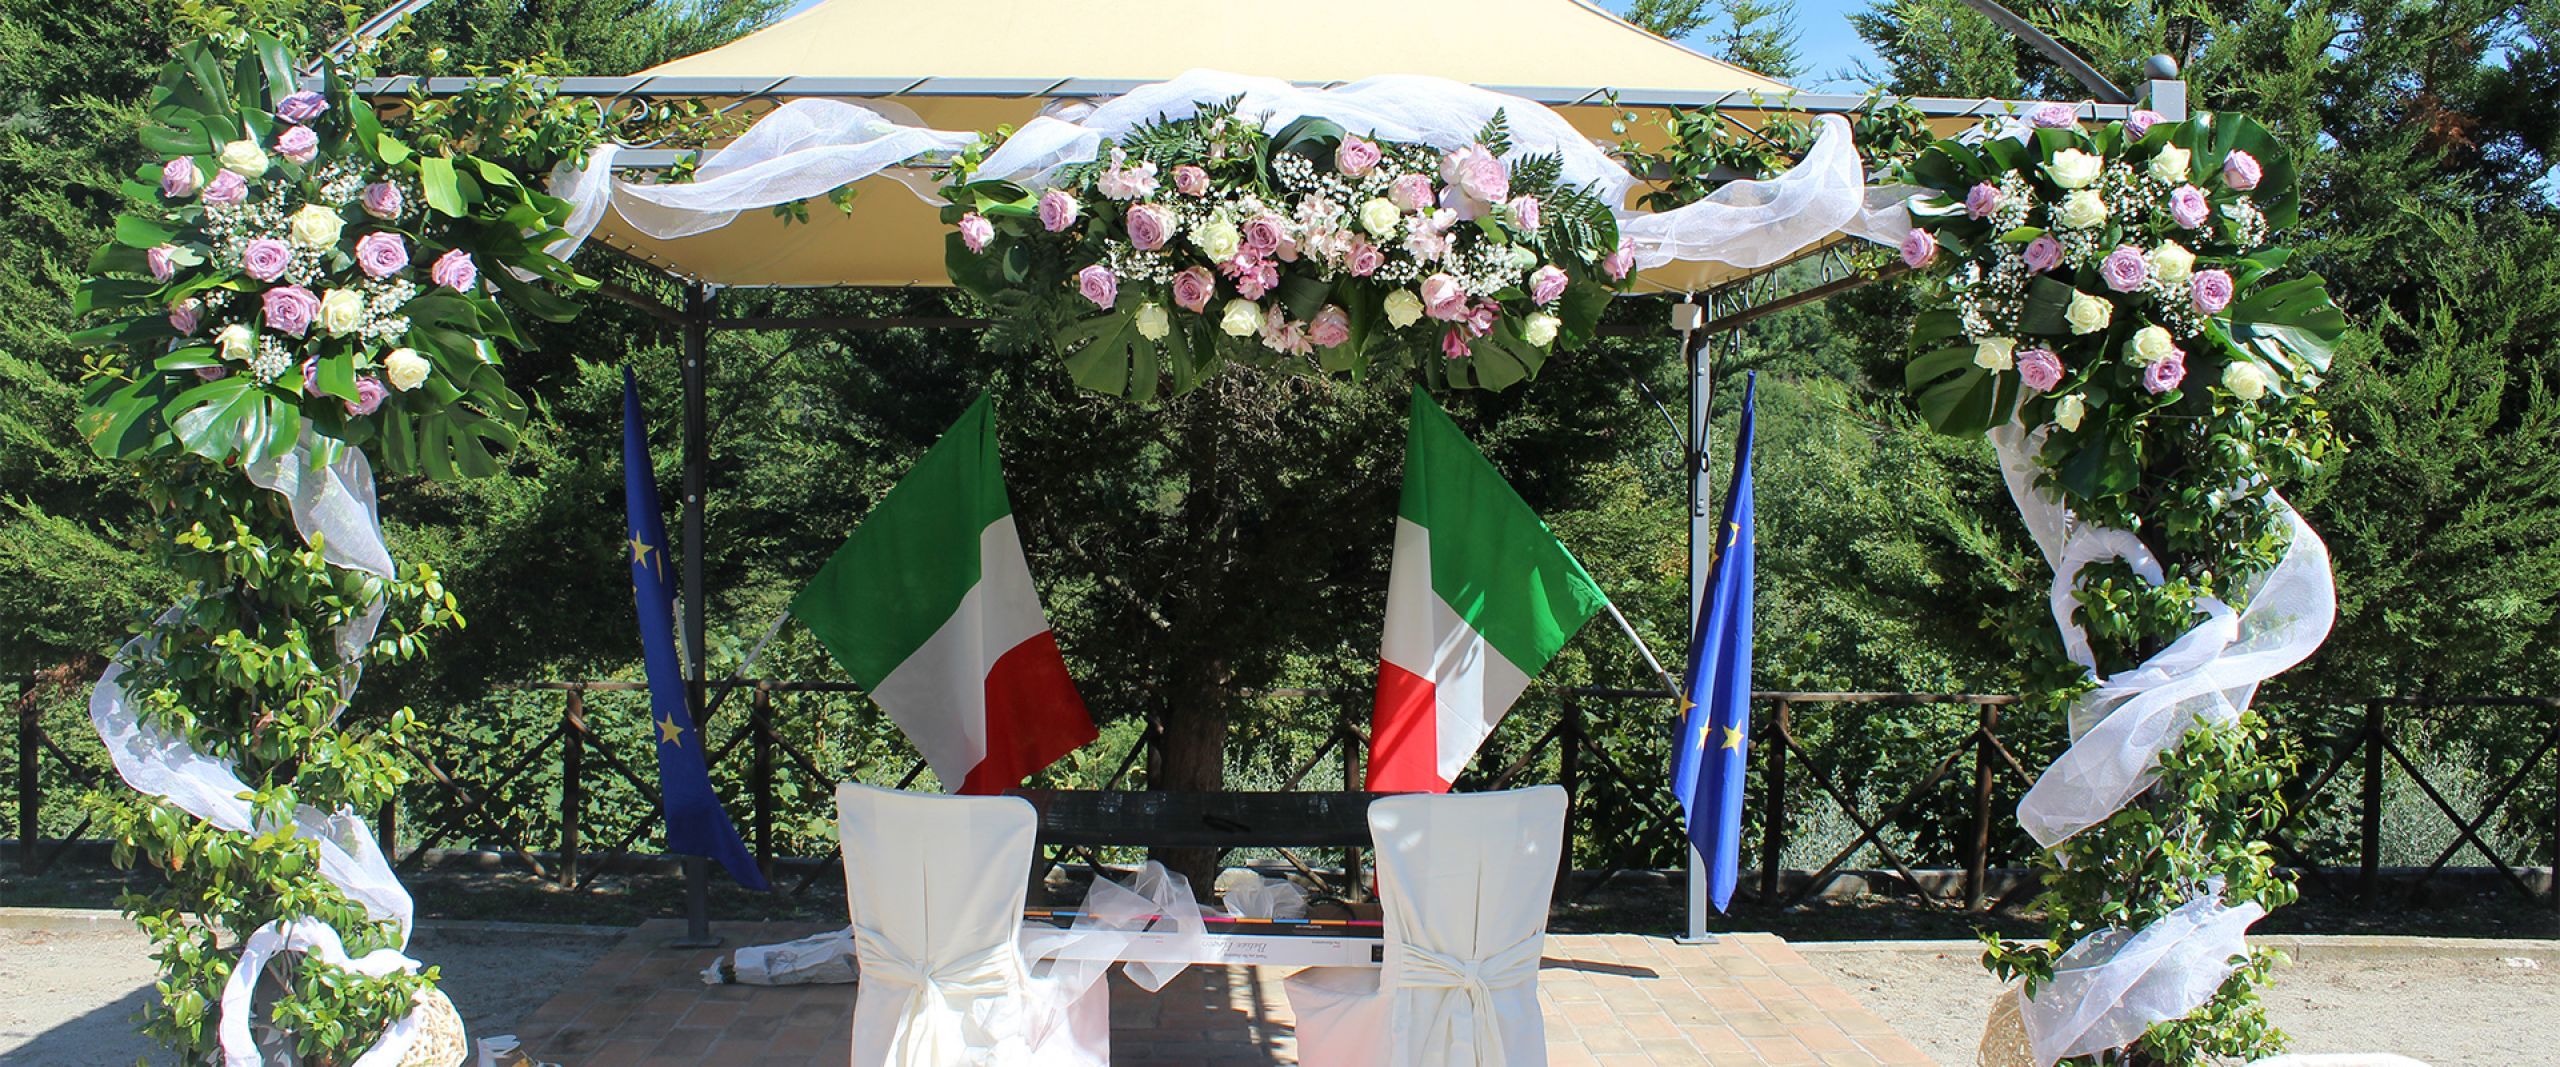 Addobbi floreali per matrimonio installazione a Perugia, Terni e centro italia